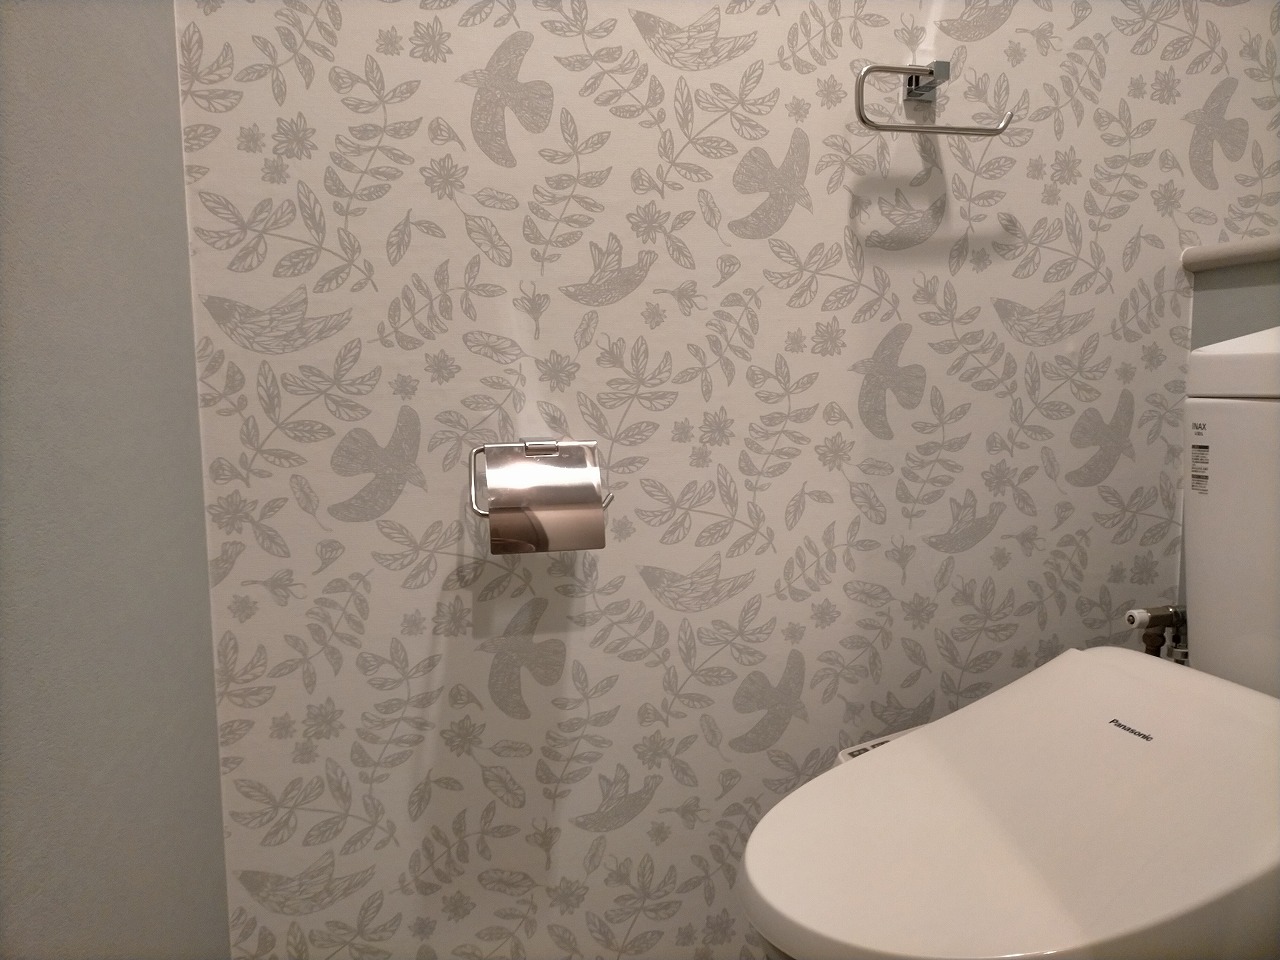 トイレ交換 壁紙 床 のリフォーム トラブラン